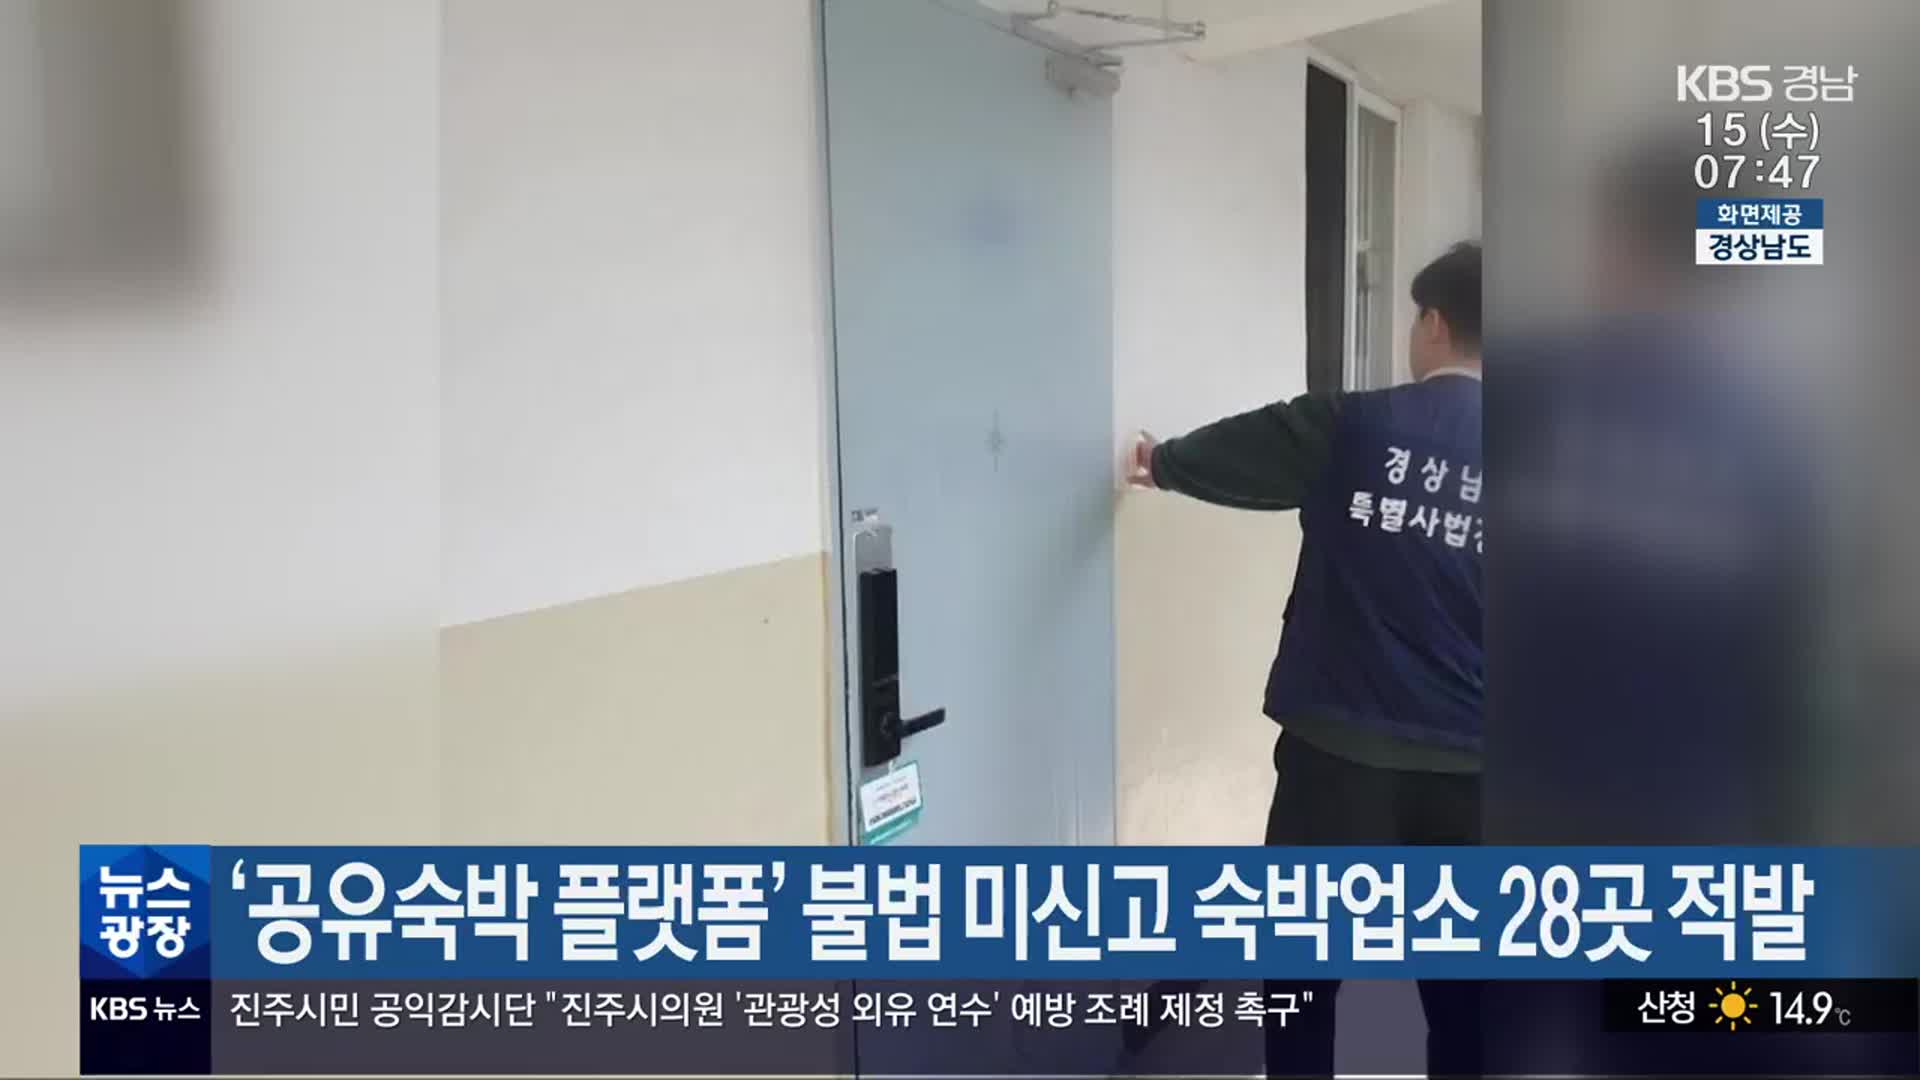 ‘공유숙박 플랫폼’ 불법 미신고 숙박업소 28곳 적발